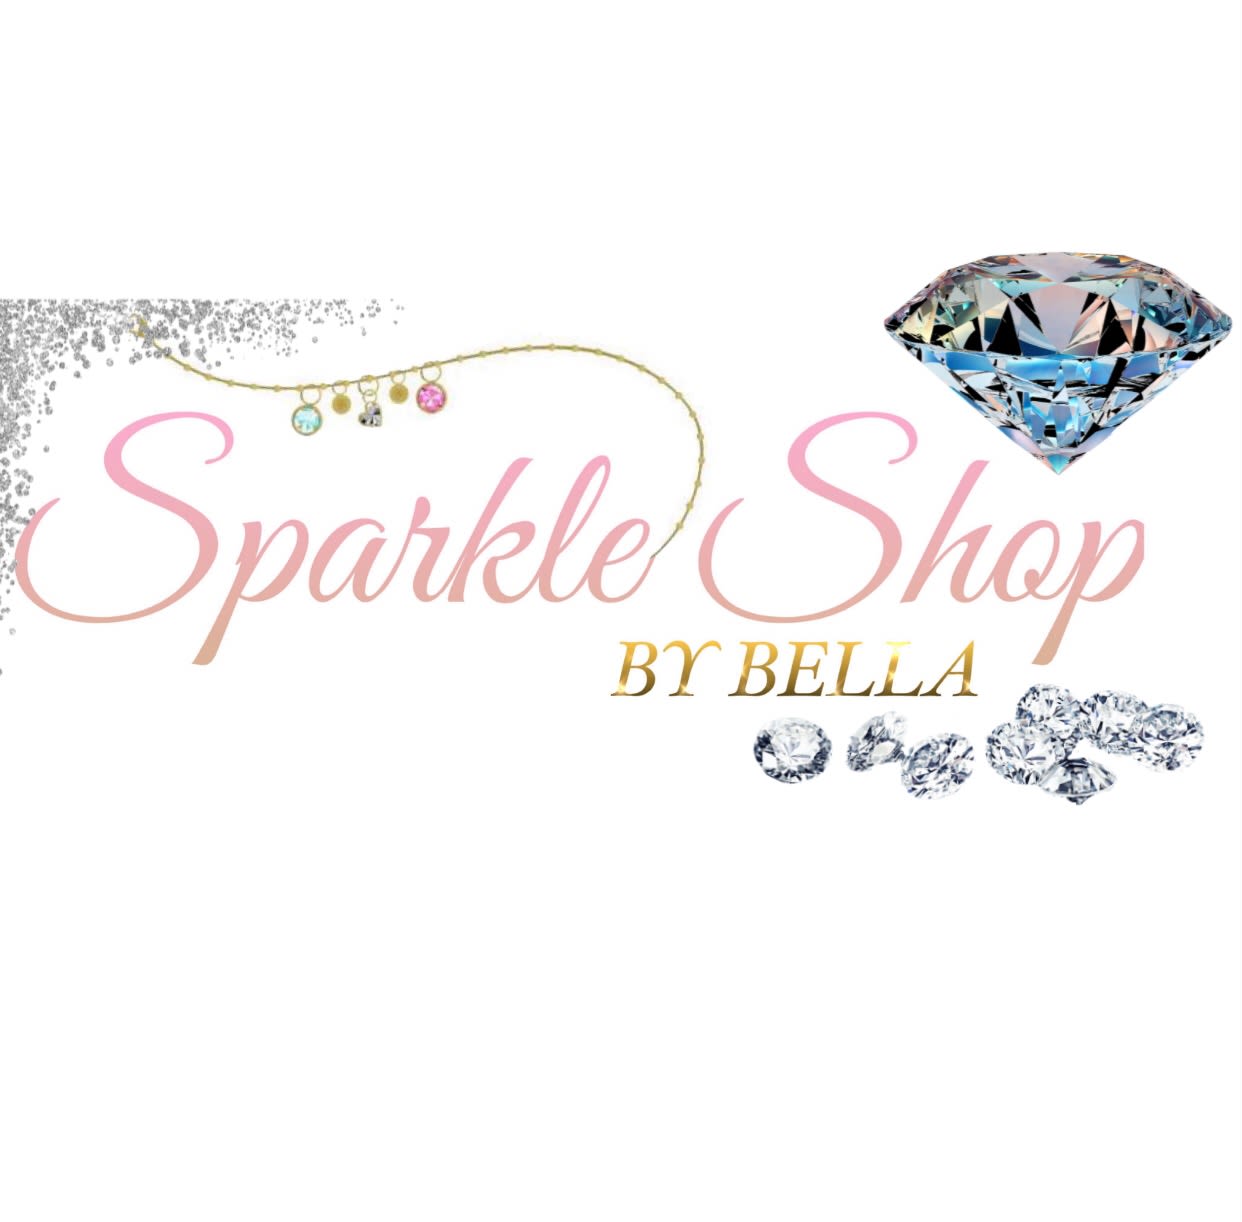 Sparkle Shop